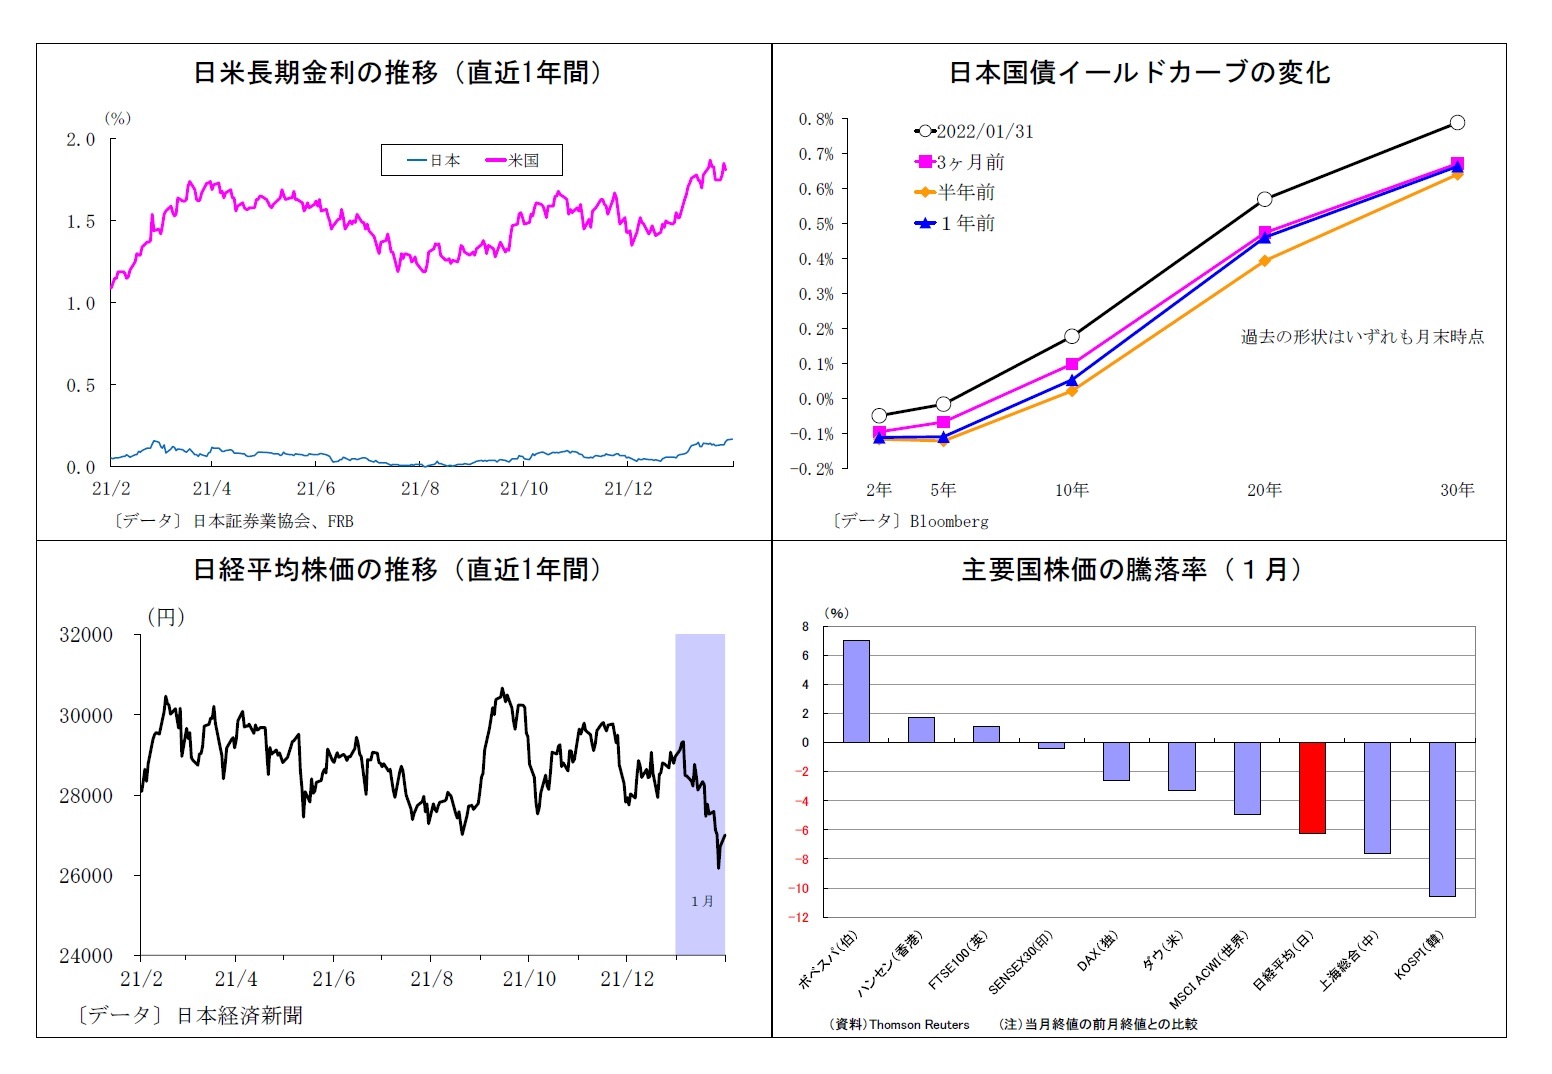 日米長期金利の推移（直近1年間）/日米長期金利の推移（直近1年間）/日経平均株価の推移（直近1年間）/主要国株価の騰落率（１月）